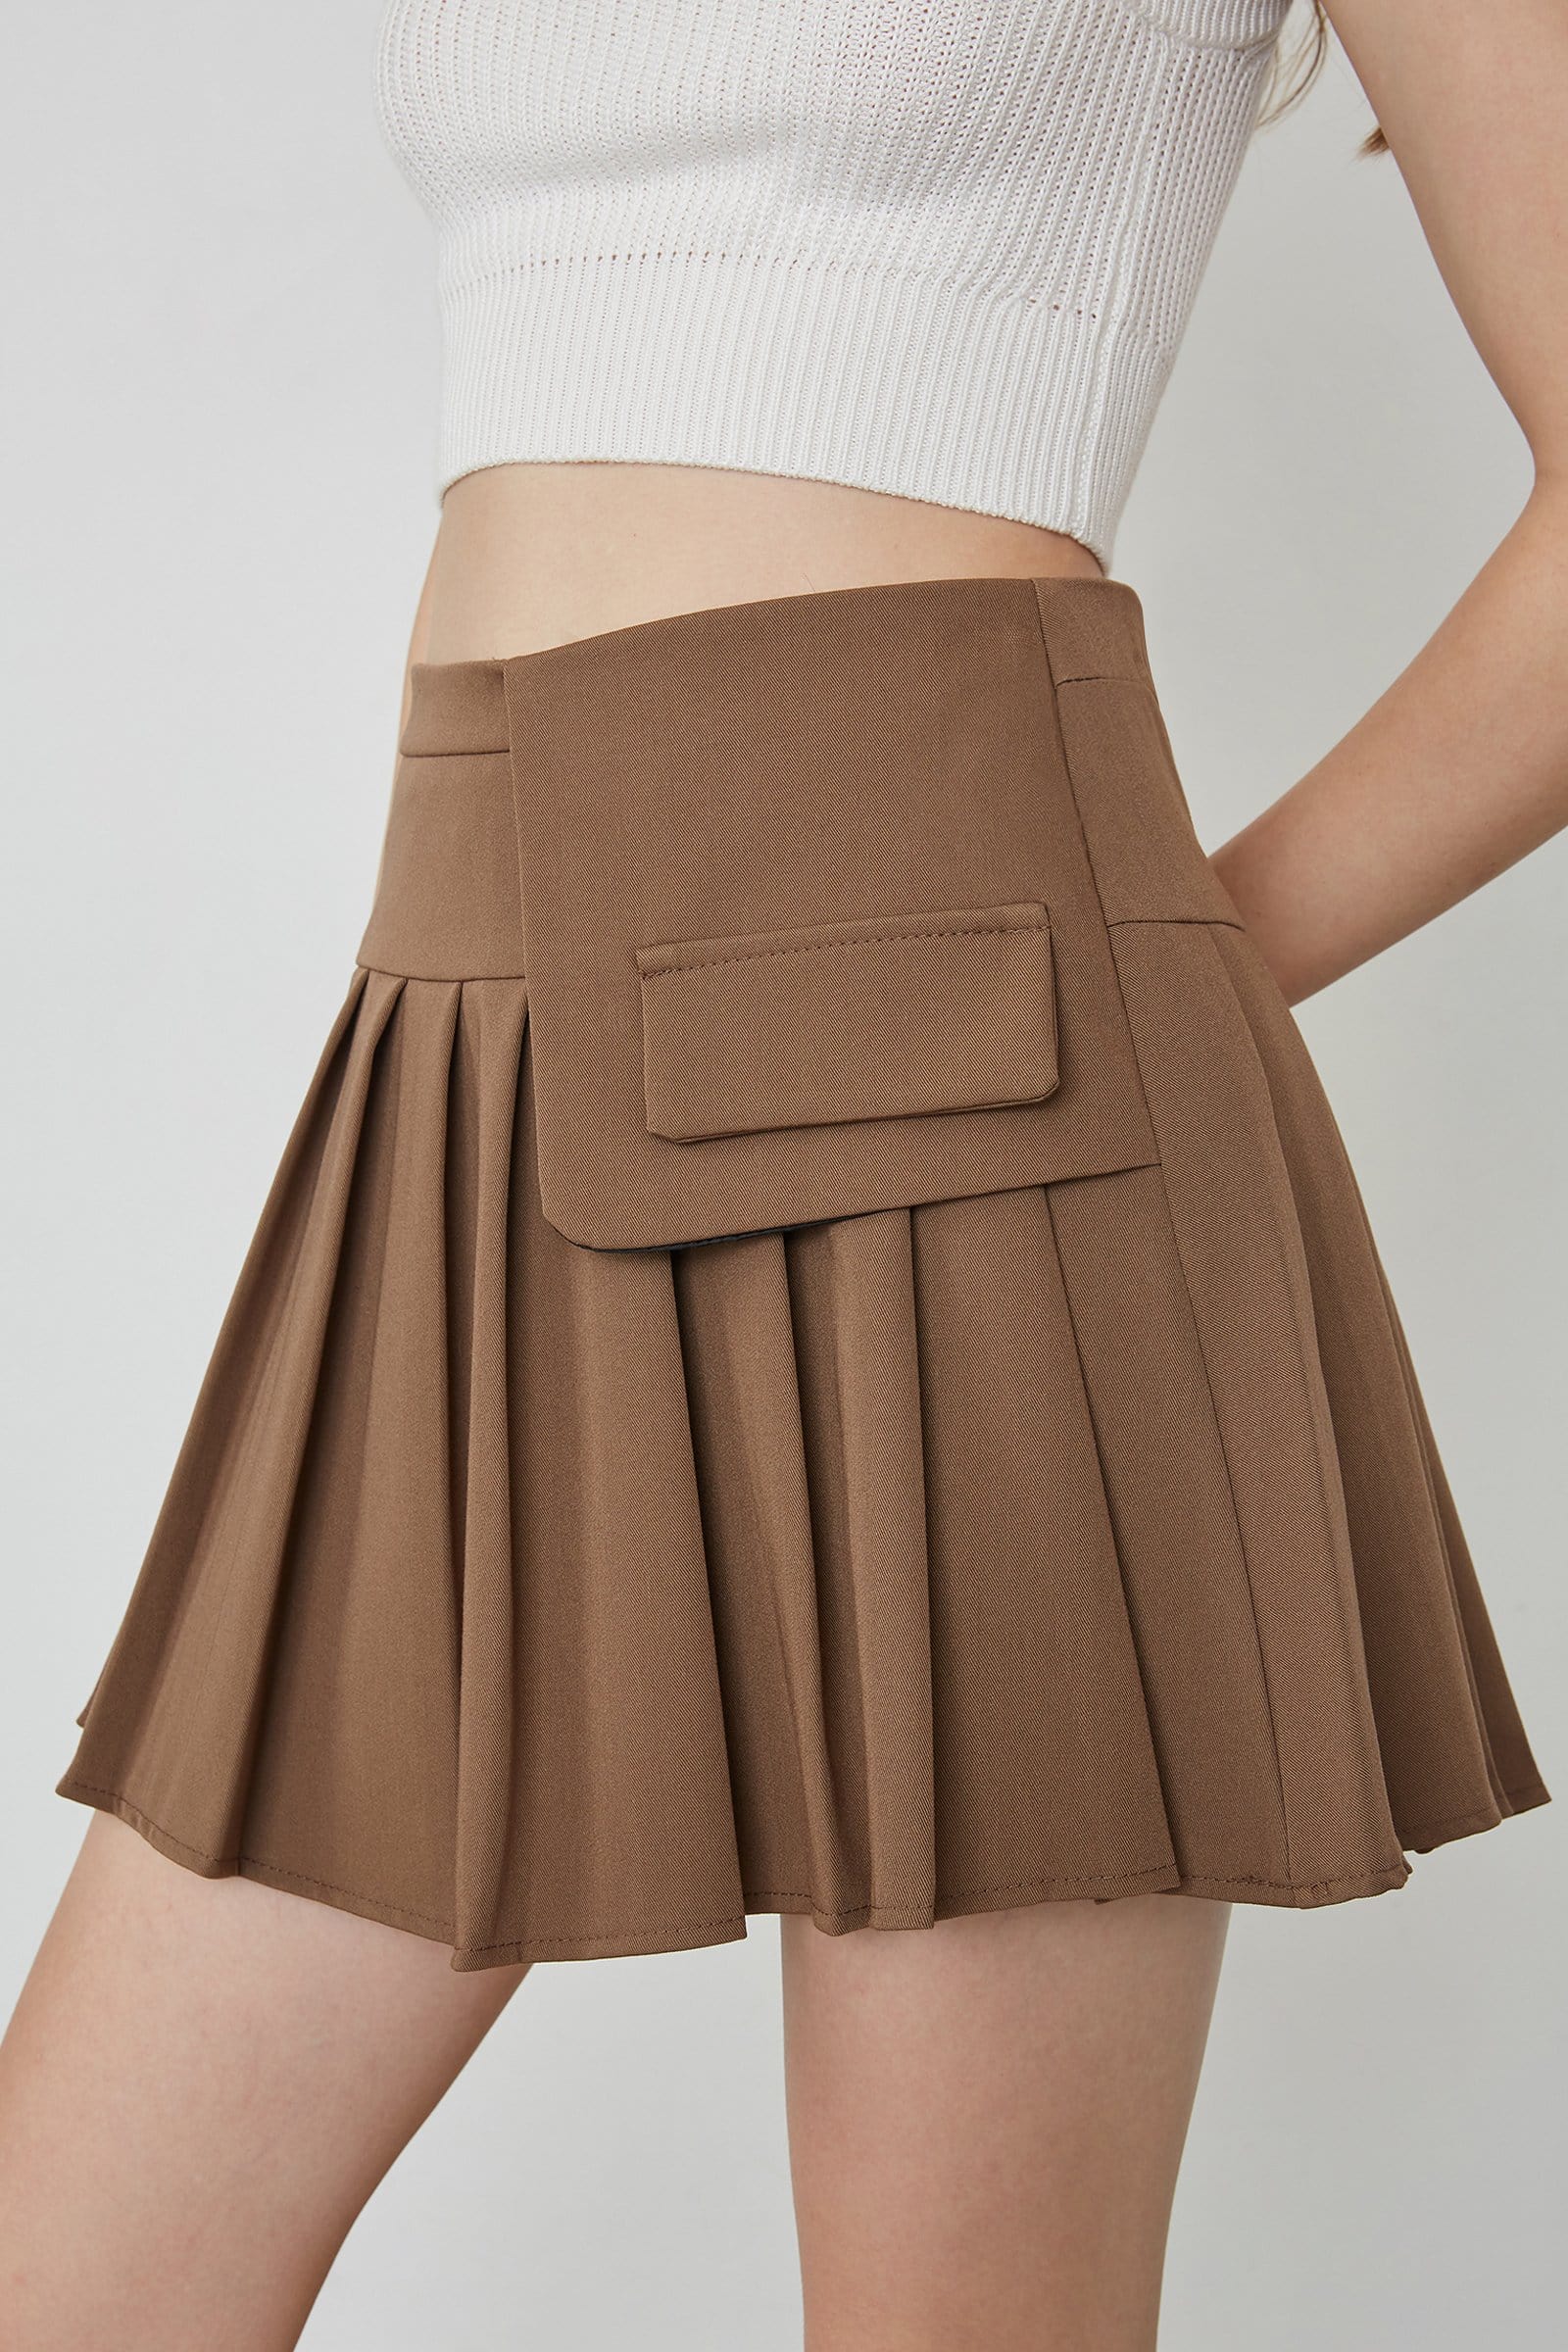 pleated mini skirt tan